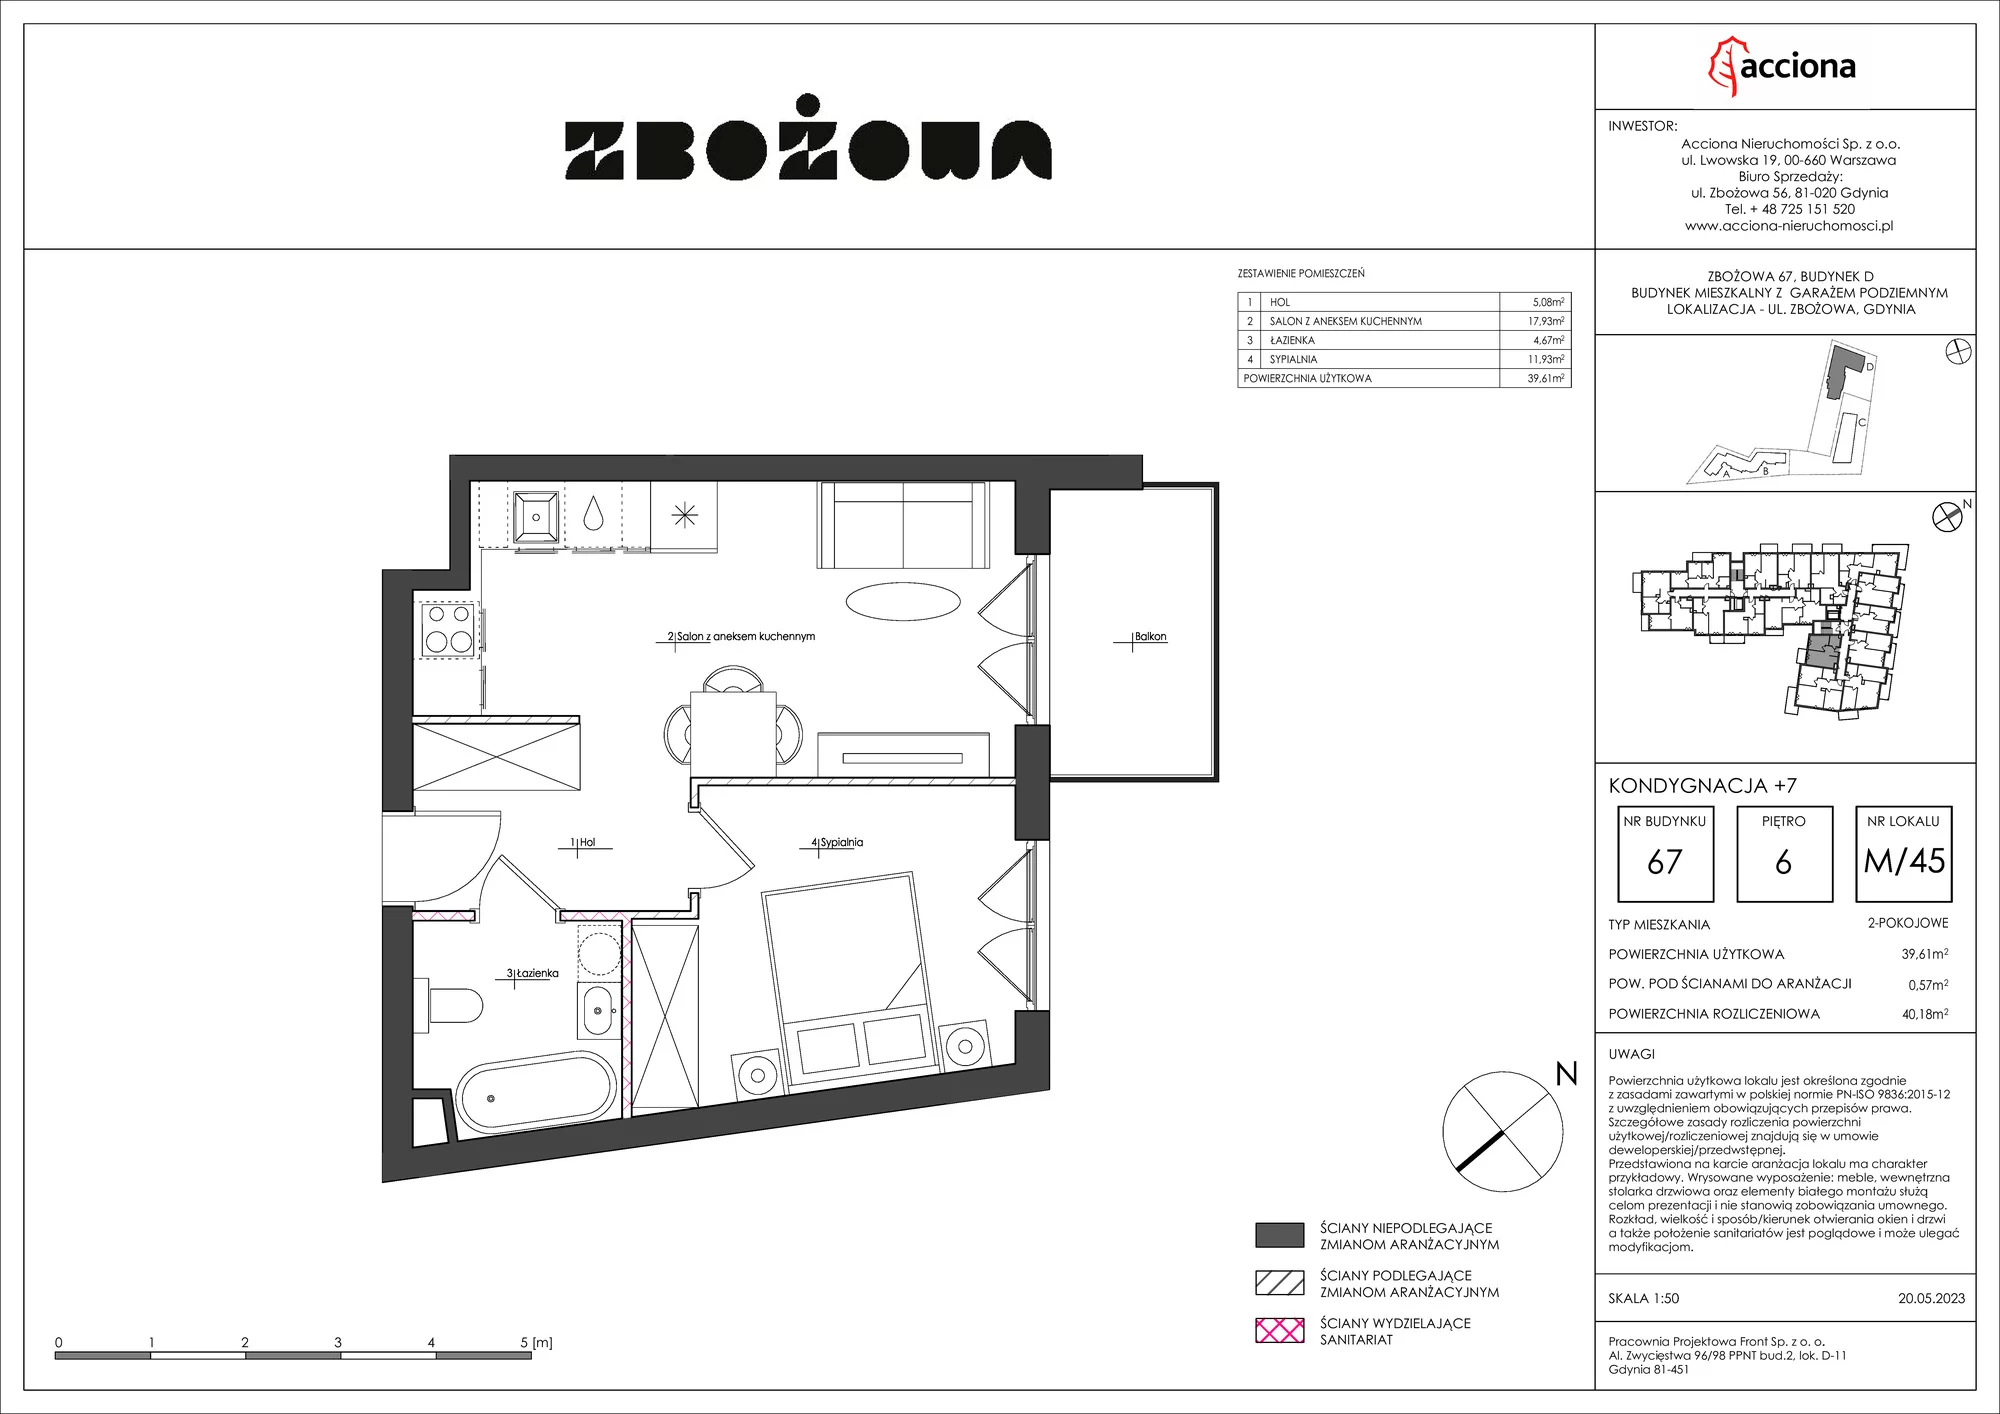 Mieszkanie 40,18 m², piętro 6, oferta nr 67.45, Zbożowa, Gdynia, Cisowa, ul. Zbożowa